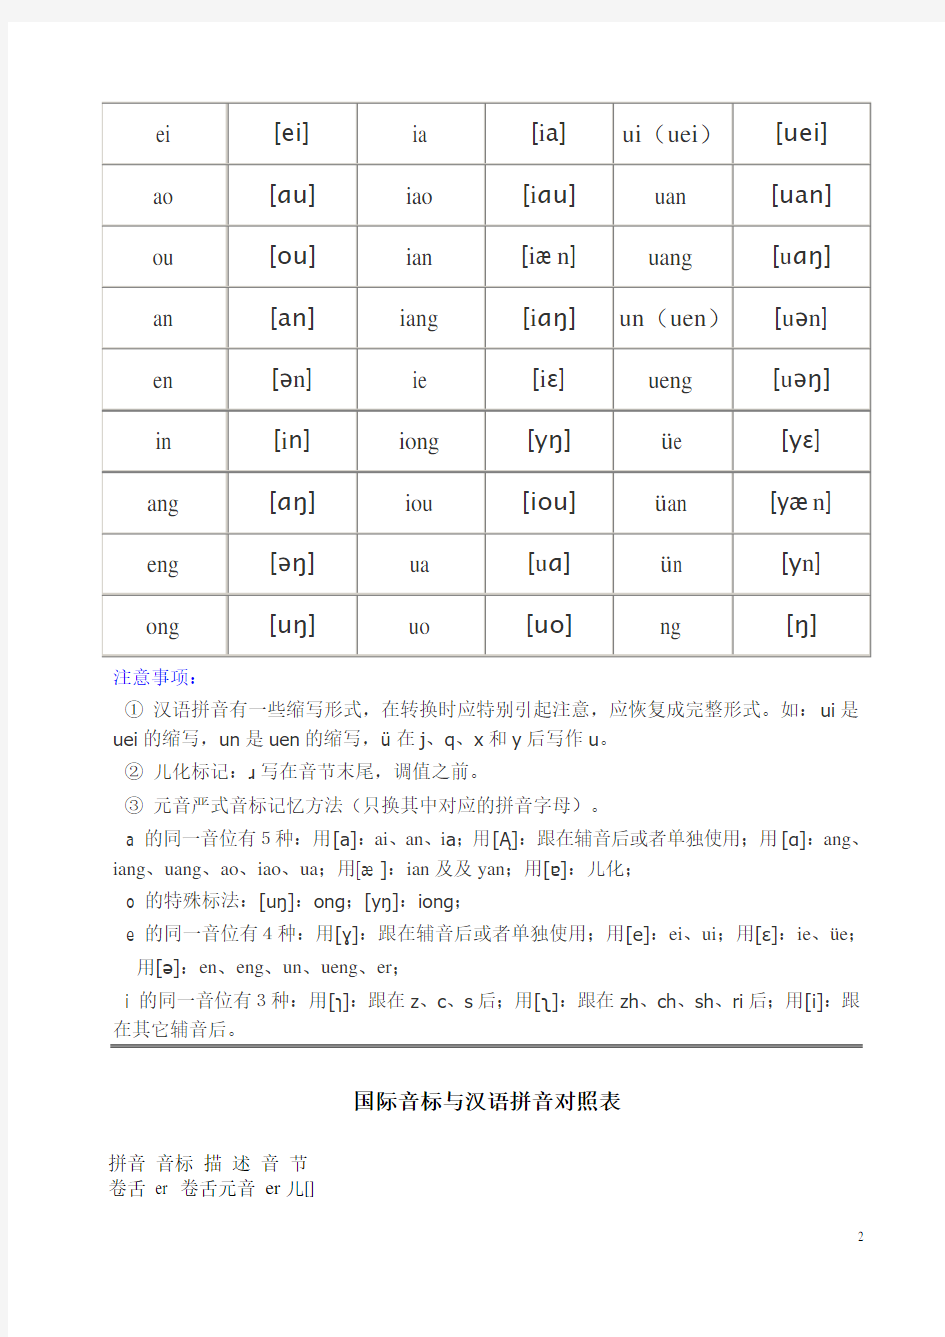 汉语拼音与国际音标对照表.